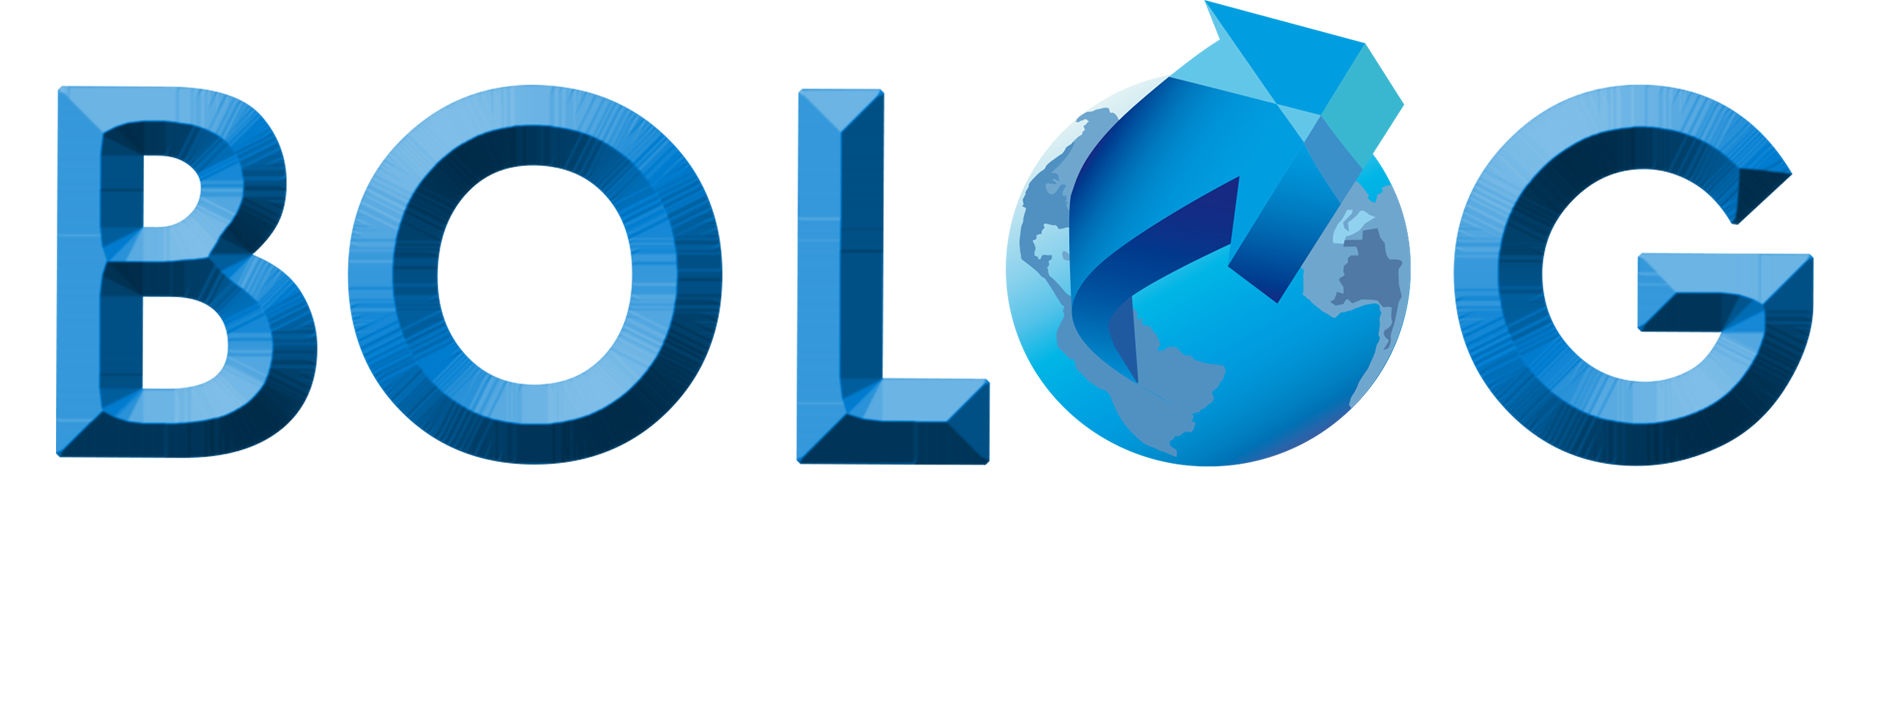 Bolog Logistics Group